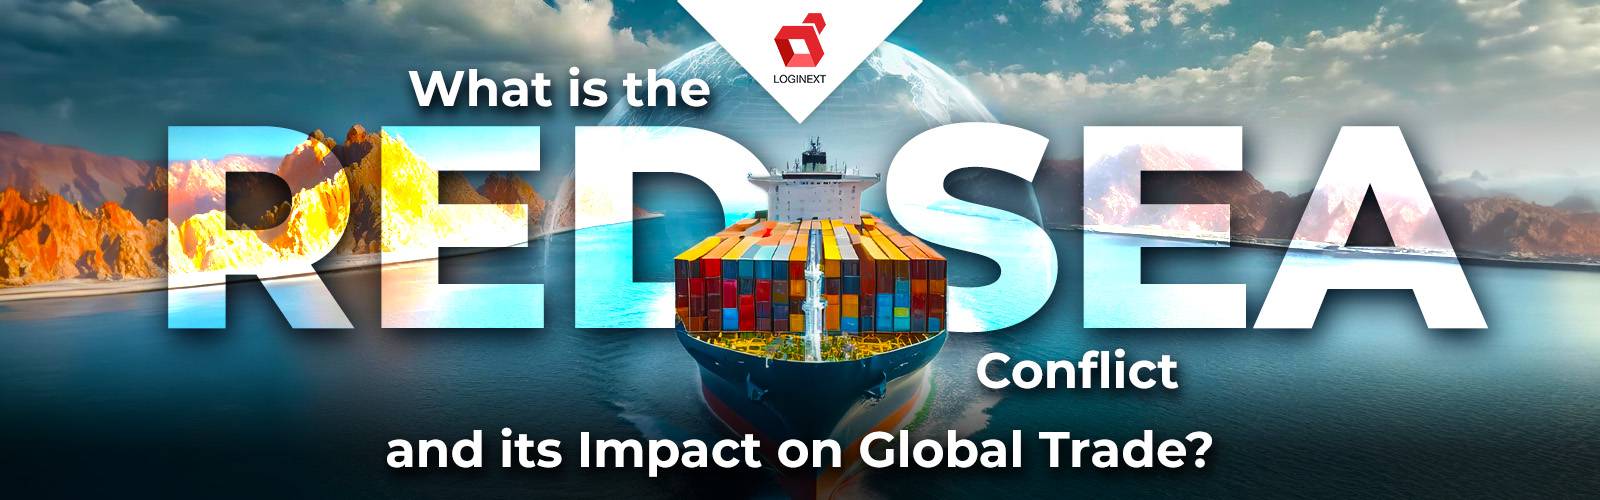 ¿Qué es el conflicto del Mar Rojo y su impacto en el comercio mundial?